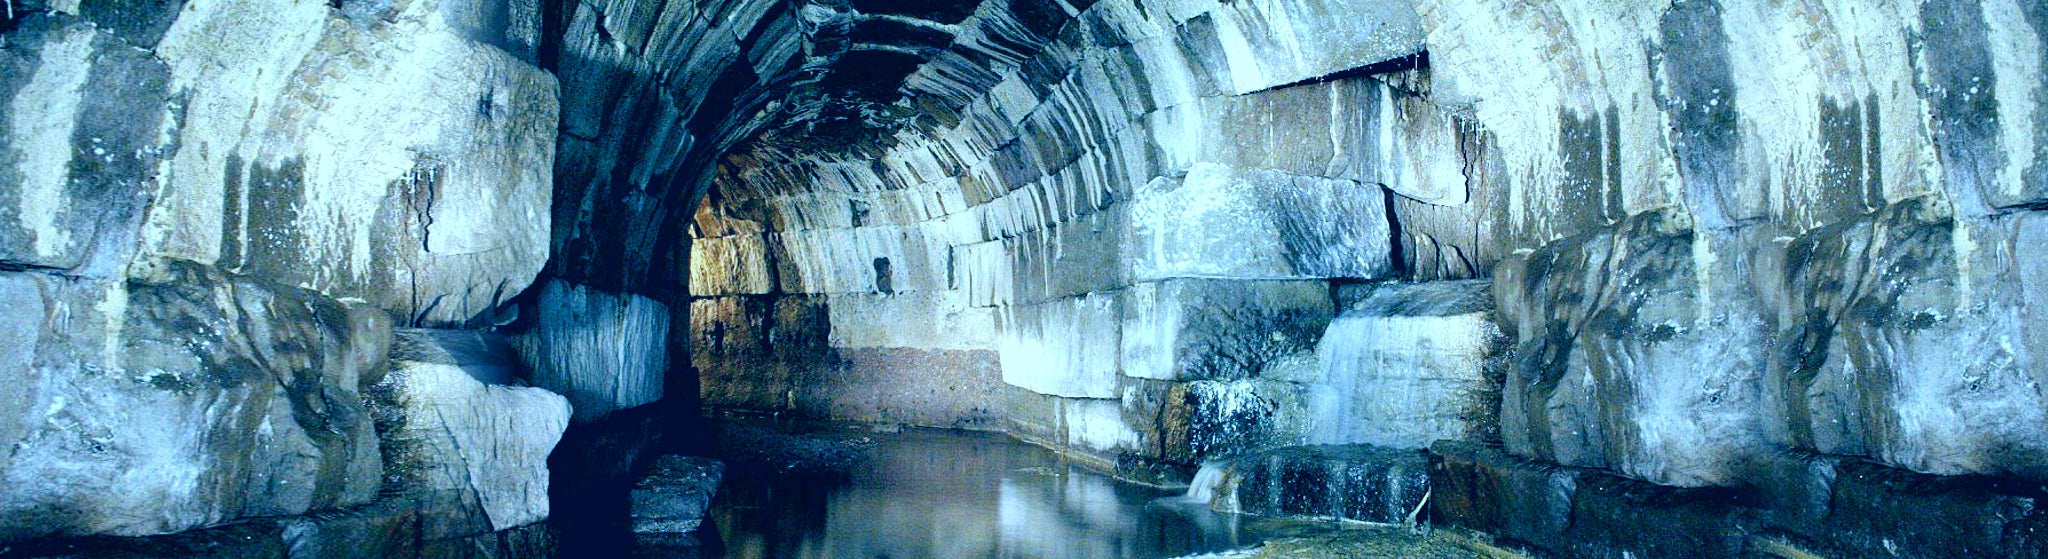 Die Cloaca Maxima in Rom, Abwasseranlage der alten Römer, heute noch in Betrieb.